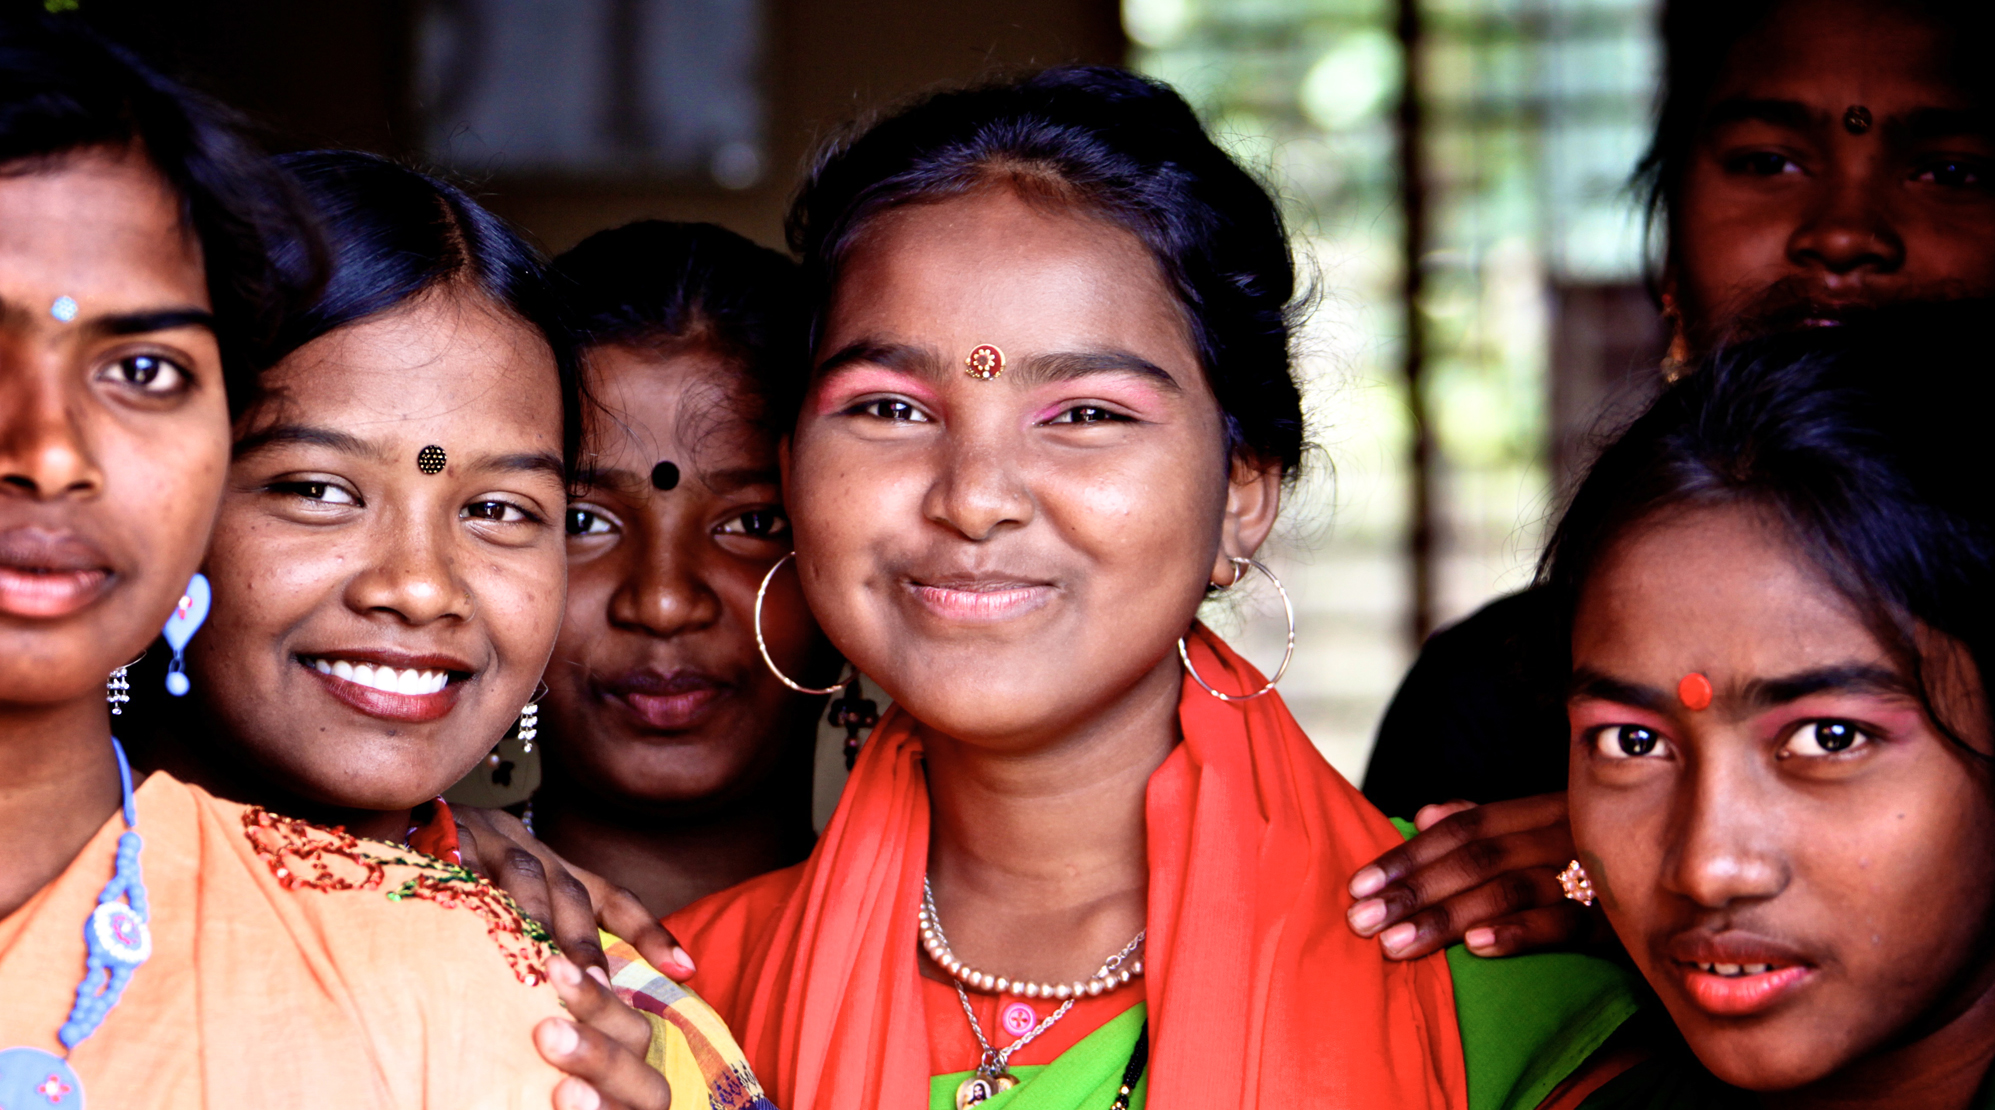 250 Millionen Mädchen vor ihrem 15. Lebensjahr geheiratet